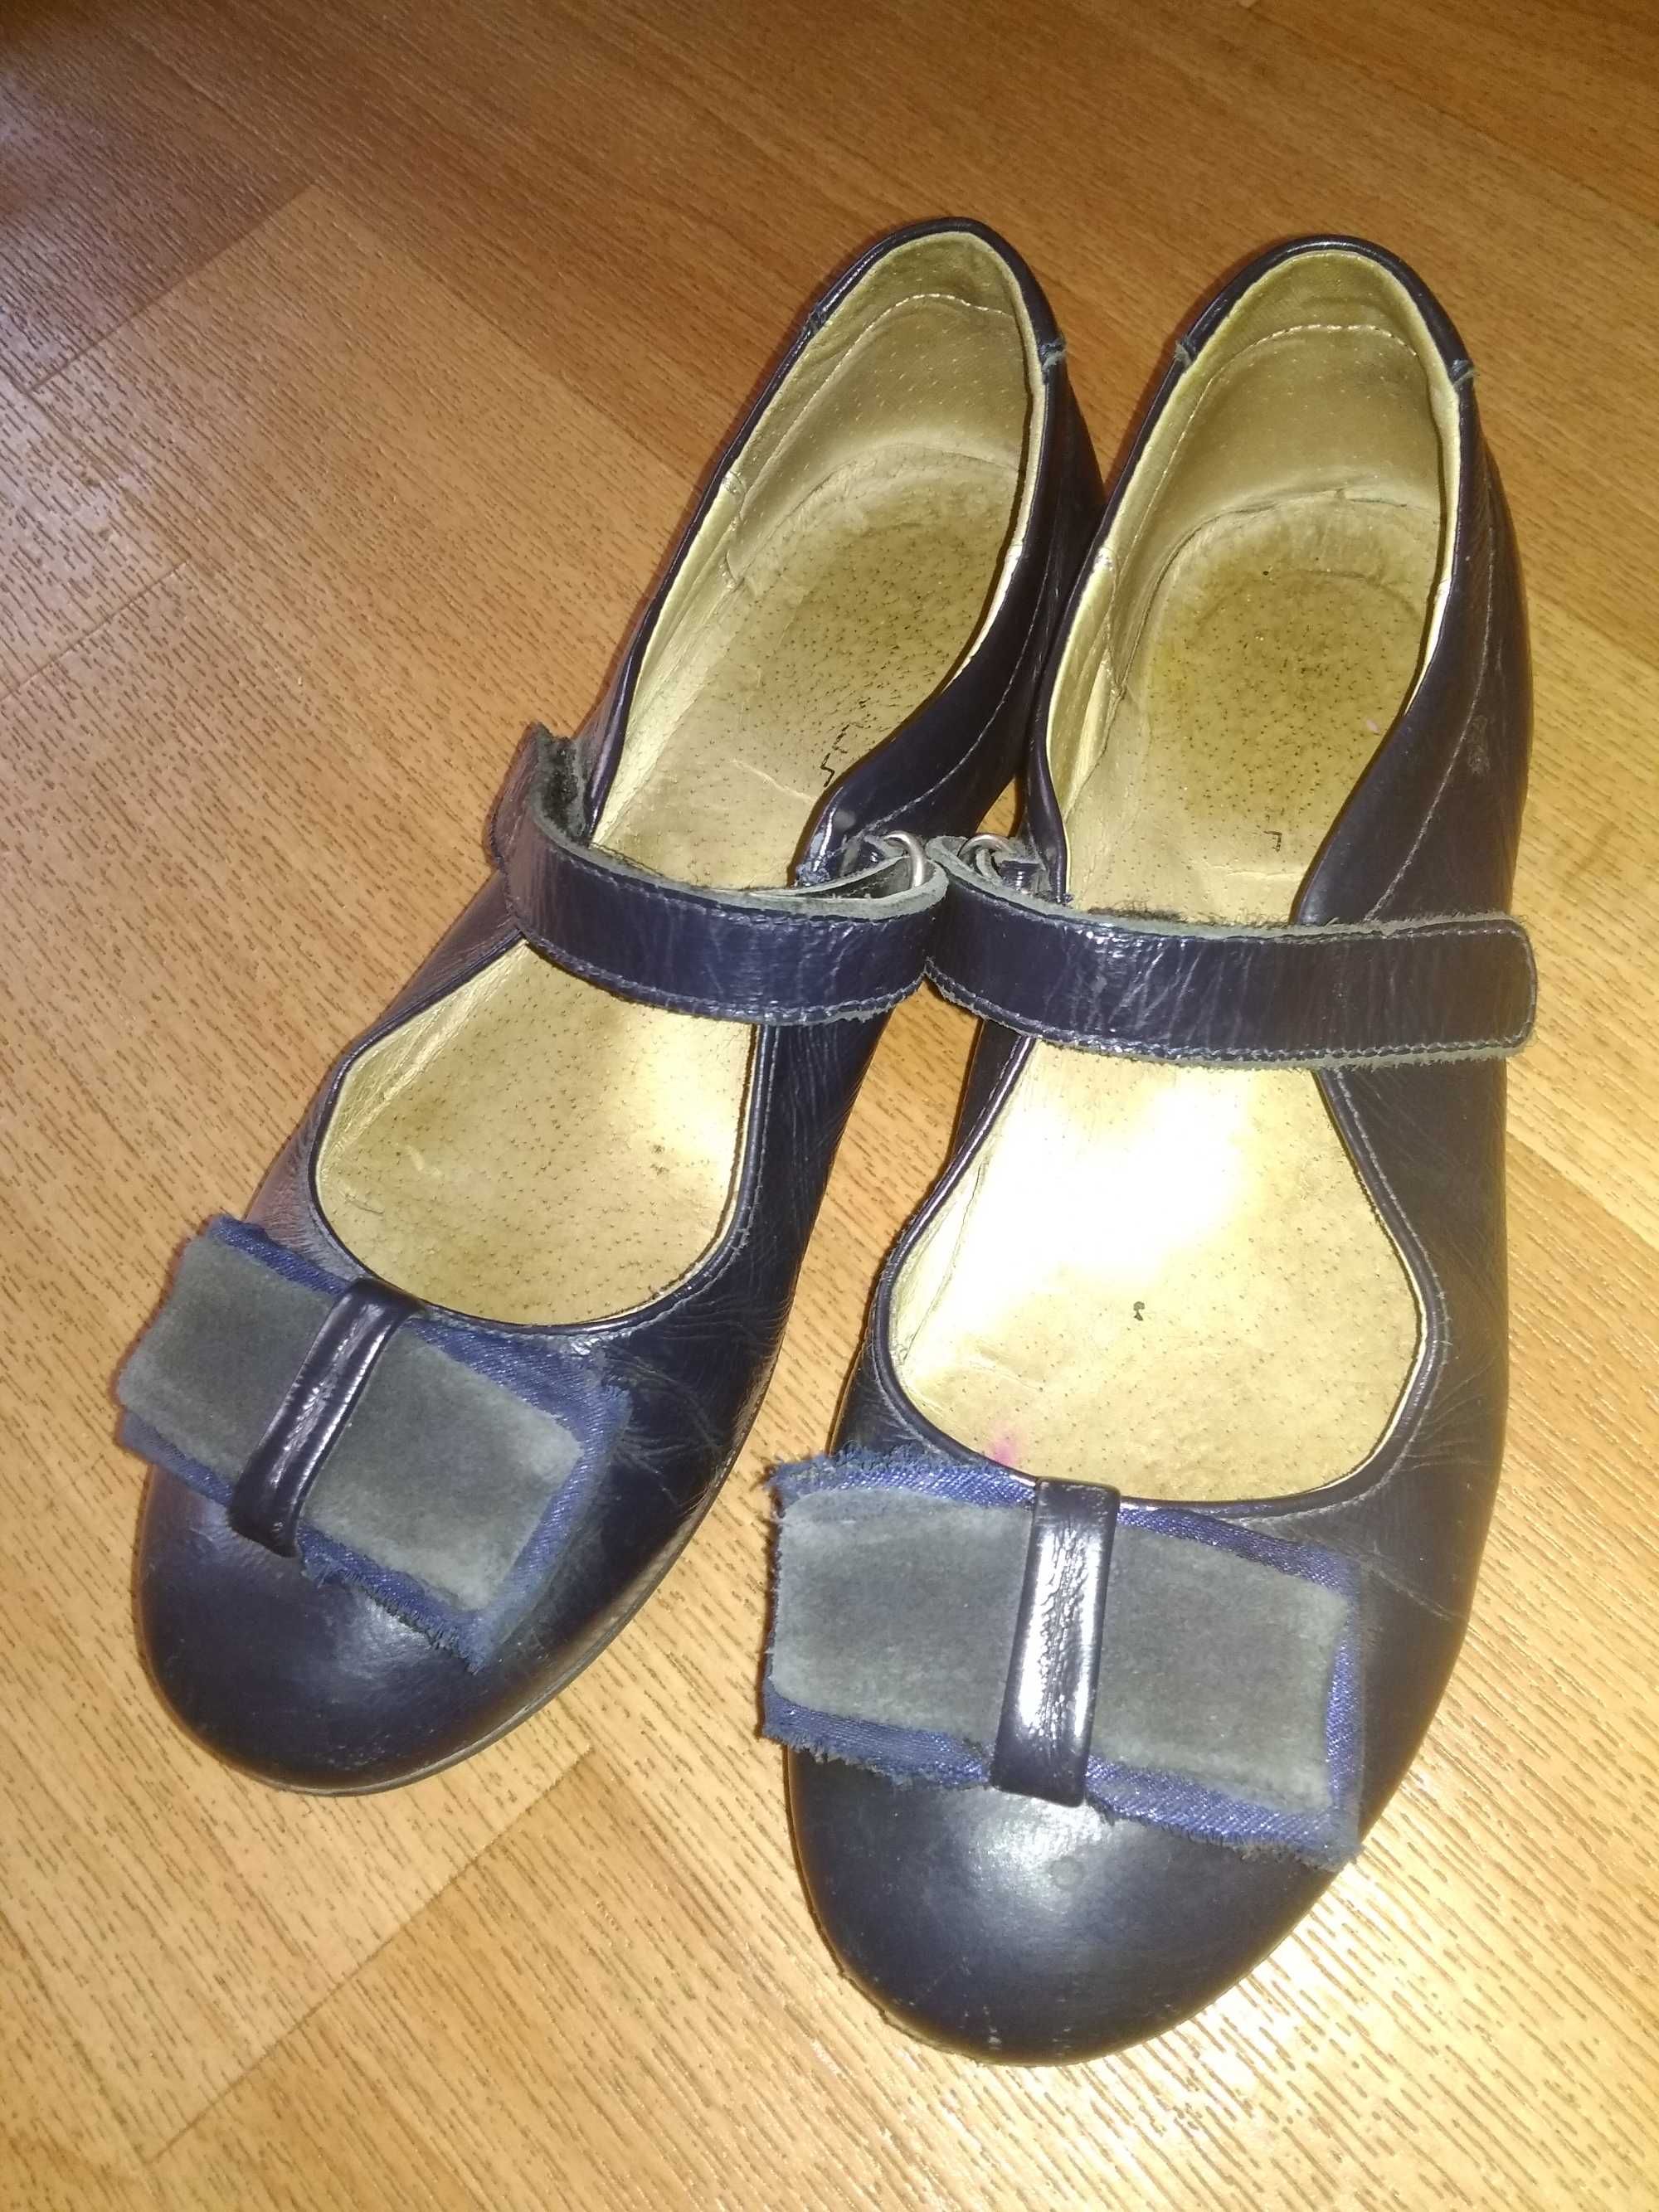 Продам туфли школьные темно синего цвета натуральная кожа р.32  100грн